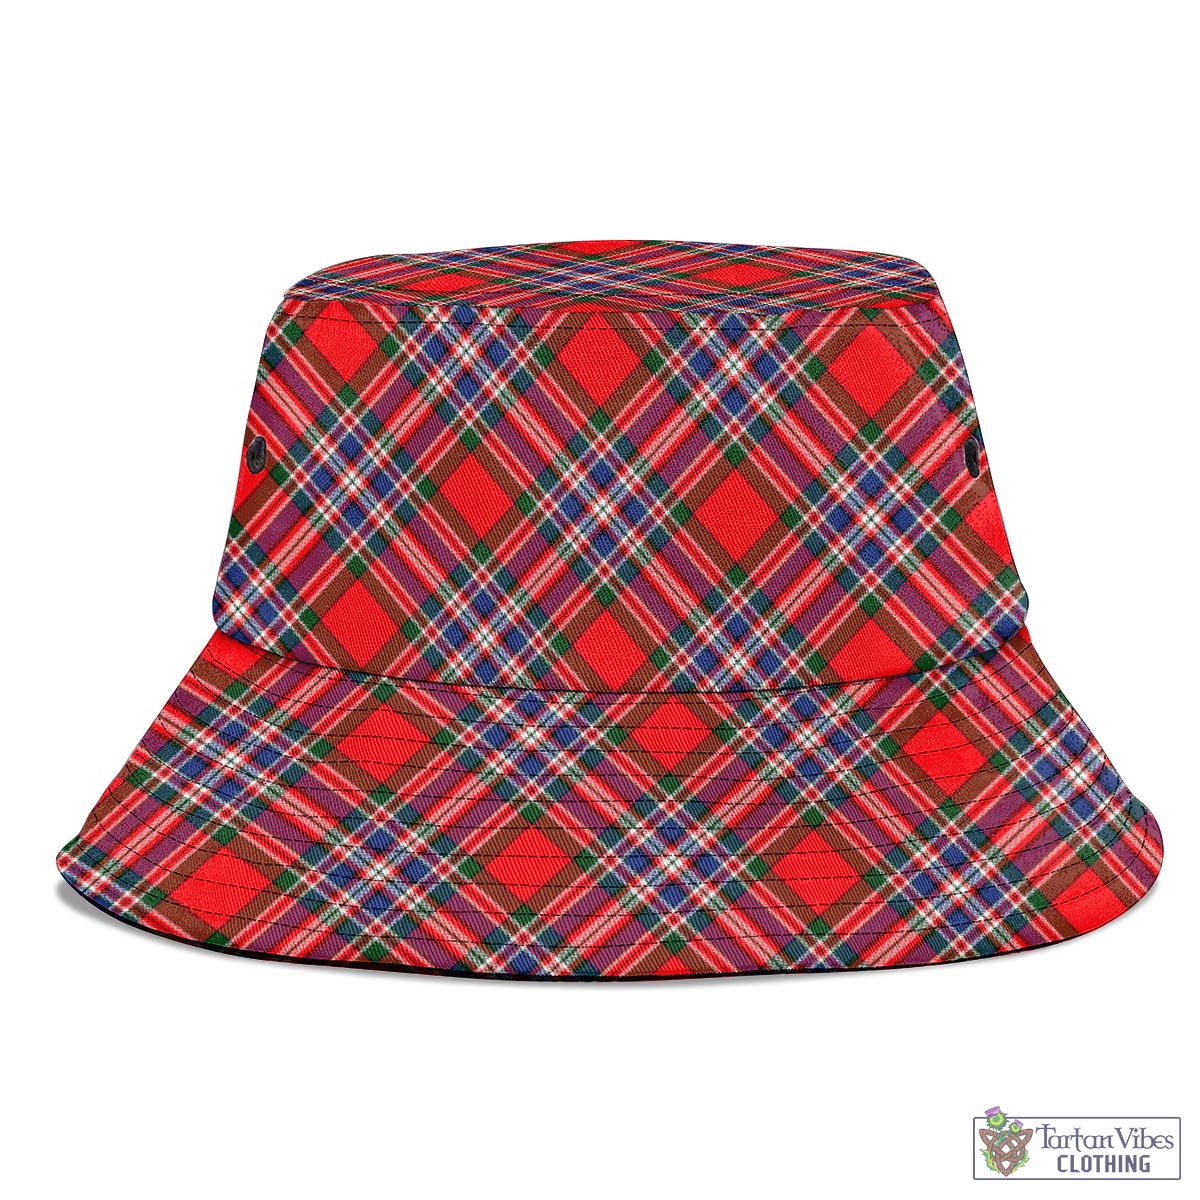 Tartan Vibes Clothing MacFarlane Modern Tartan Bucket Hat